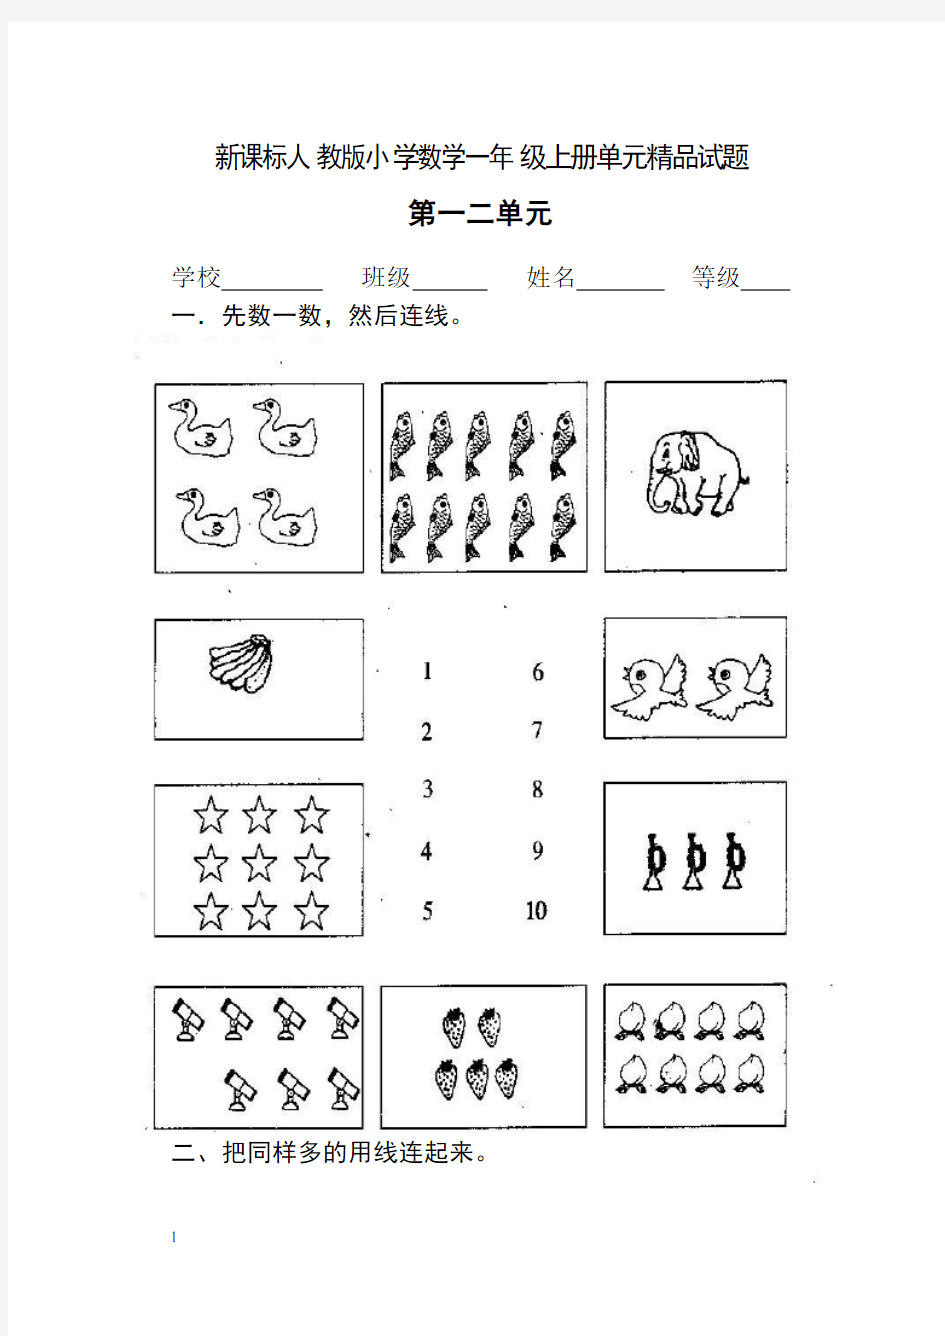 【上海市】上海市人教版小学数学一年级上册单元试题全册